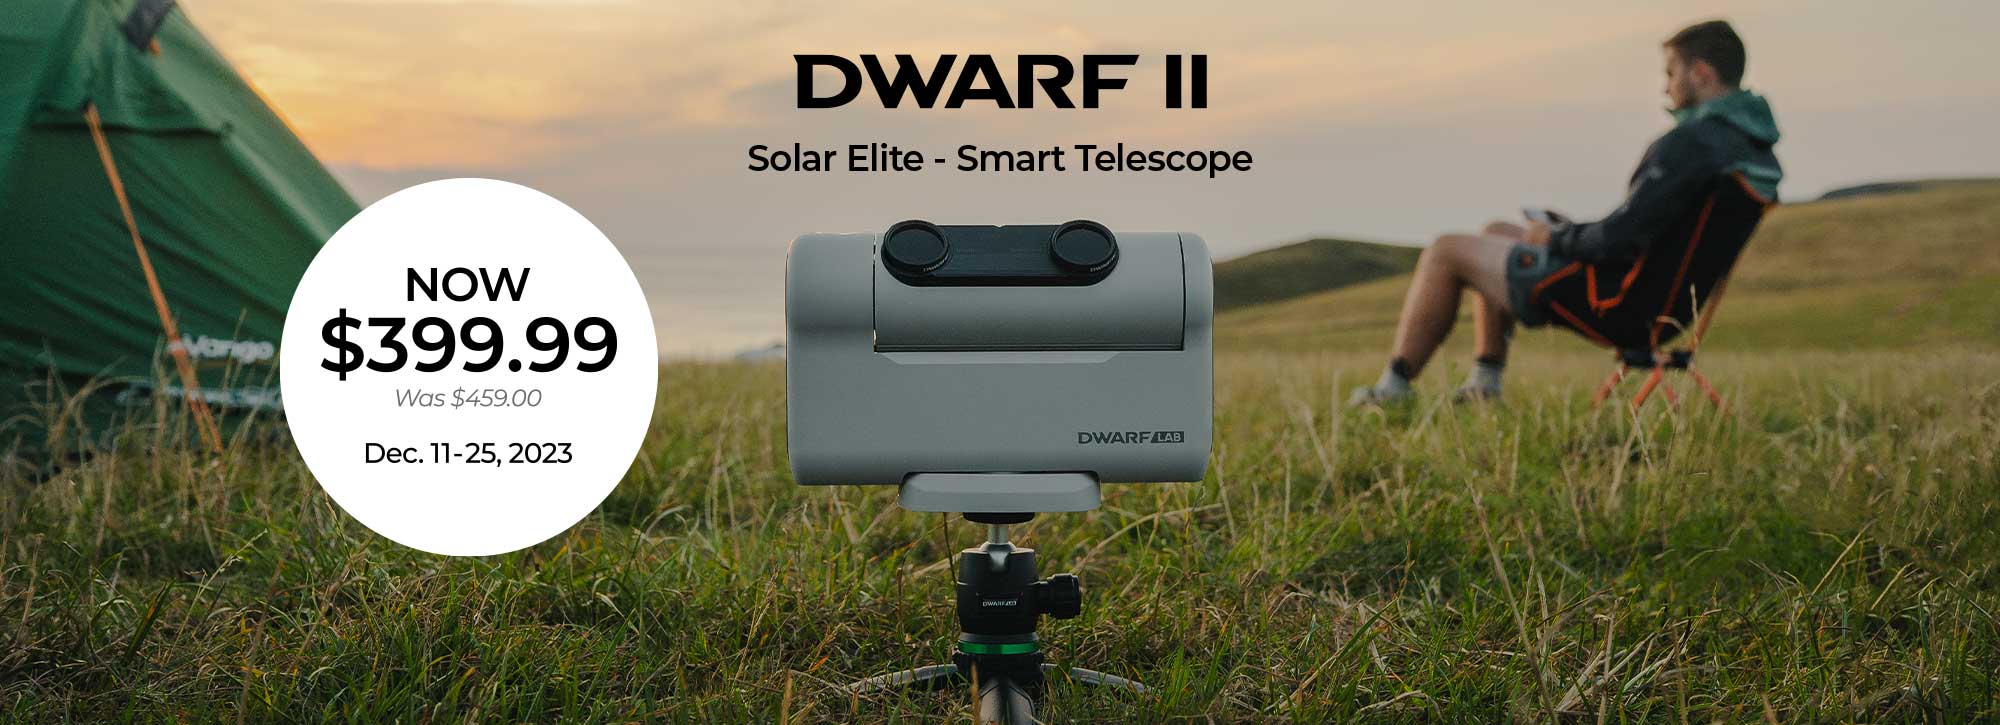 DWARF II Smart Telescope